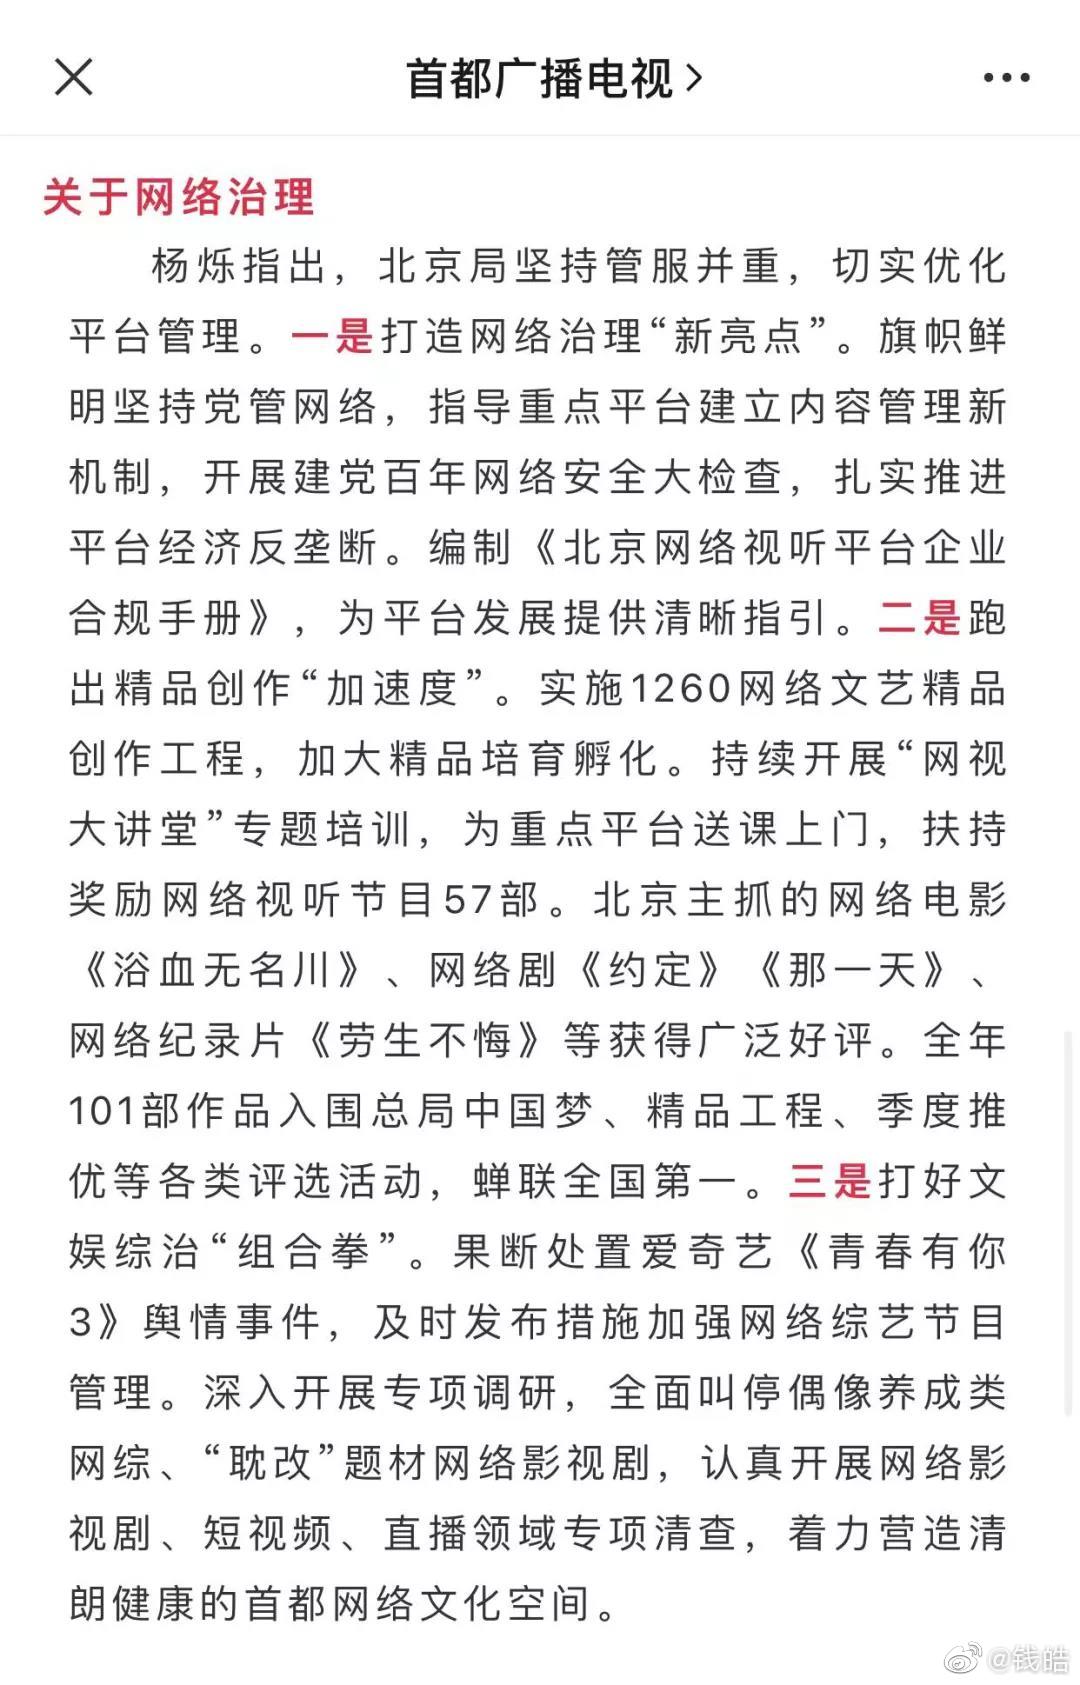 Văn bản thông báo cấm phim đam mỹ, show thần tượng của Cục điện ảnh Bắc Kinh. (Ảnh: Internet)